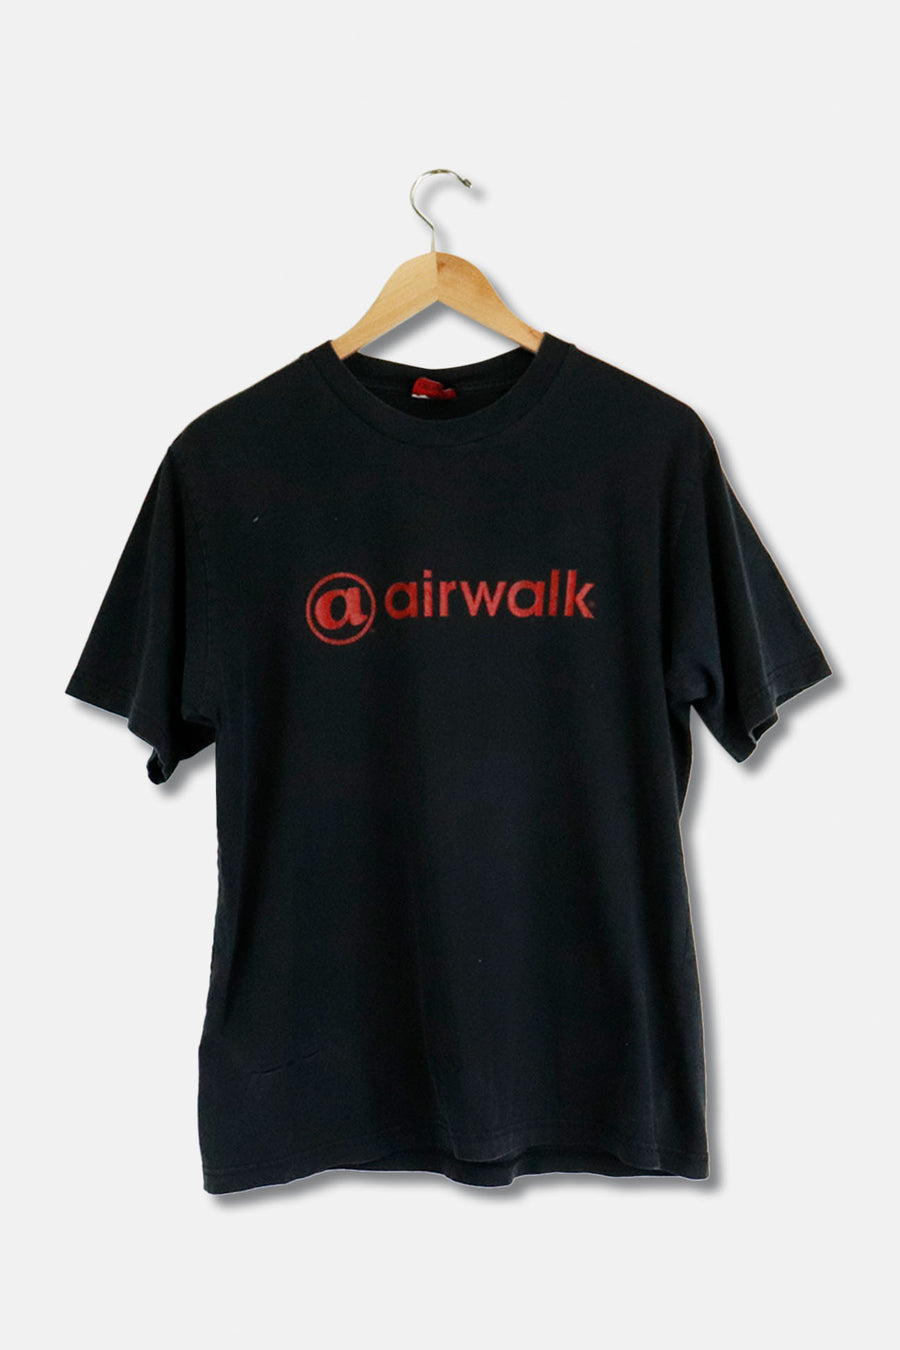 Vintage Airwalk T Shirt